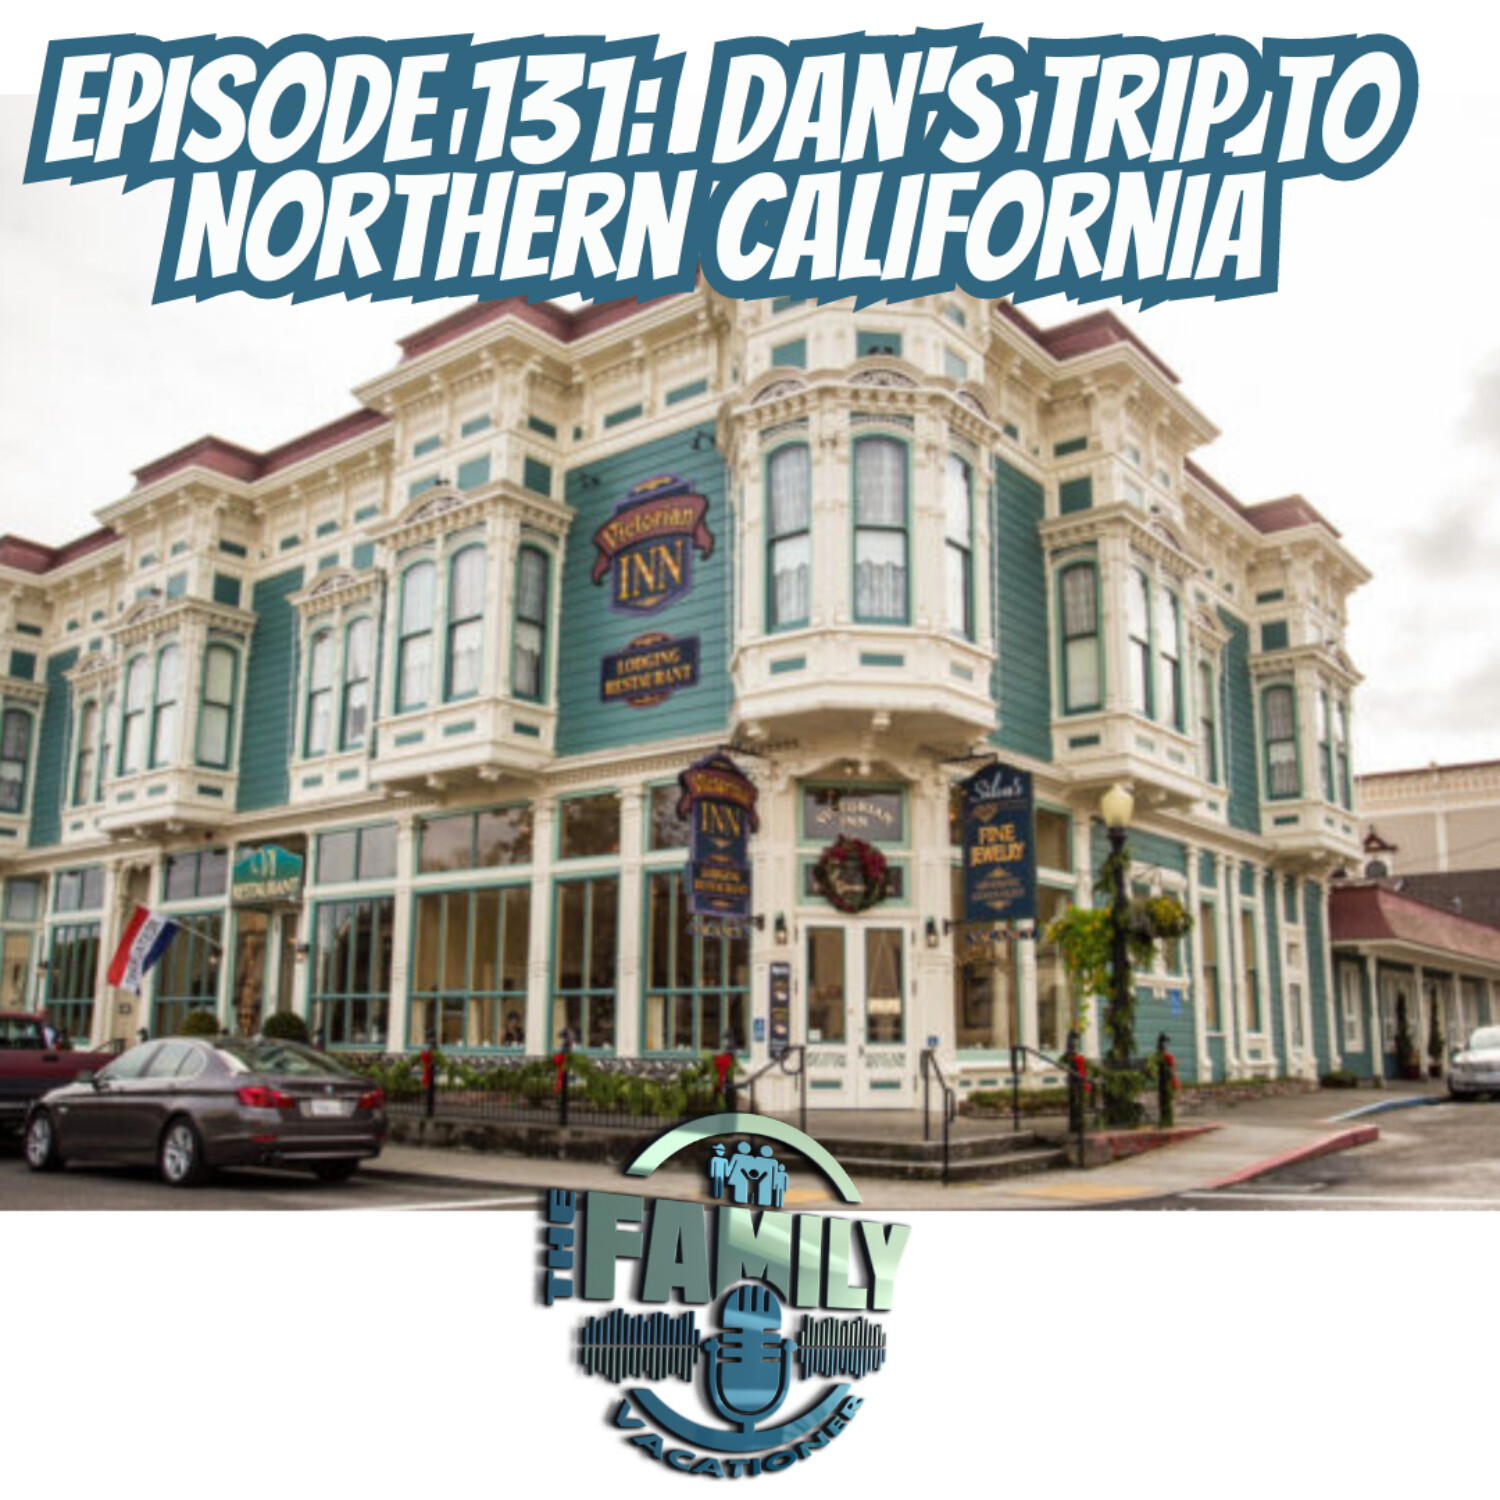 Dan's Trip to Northern California